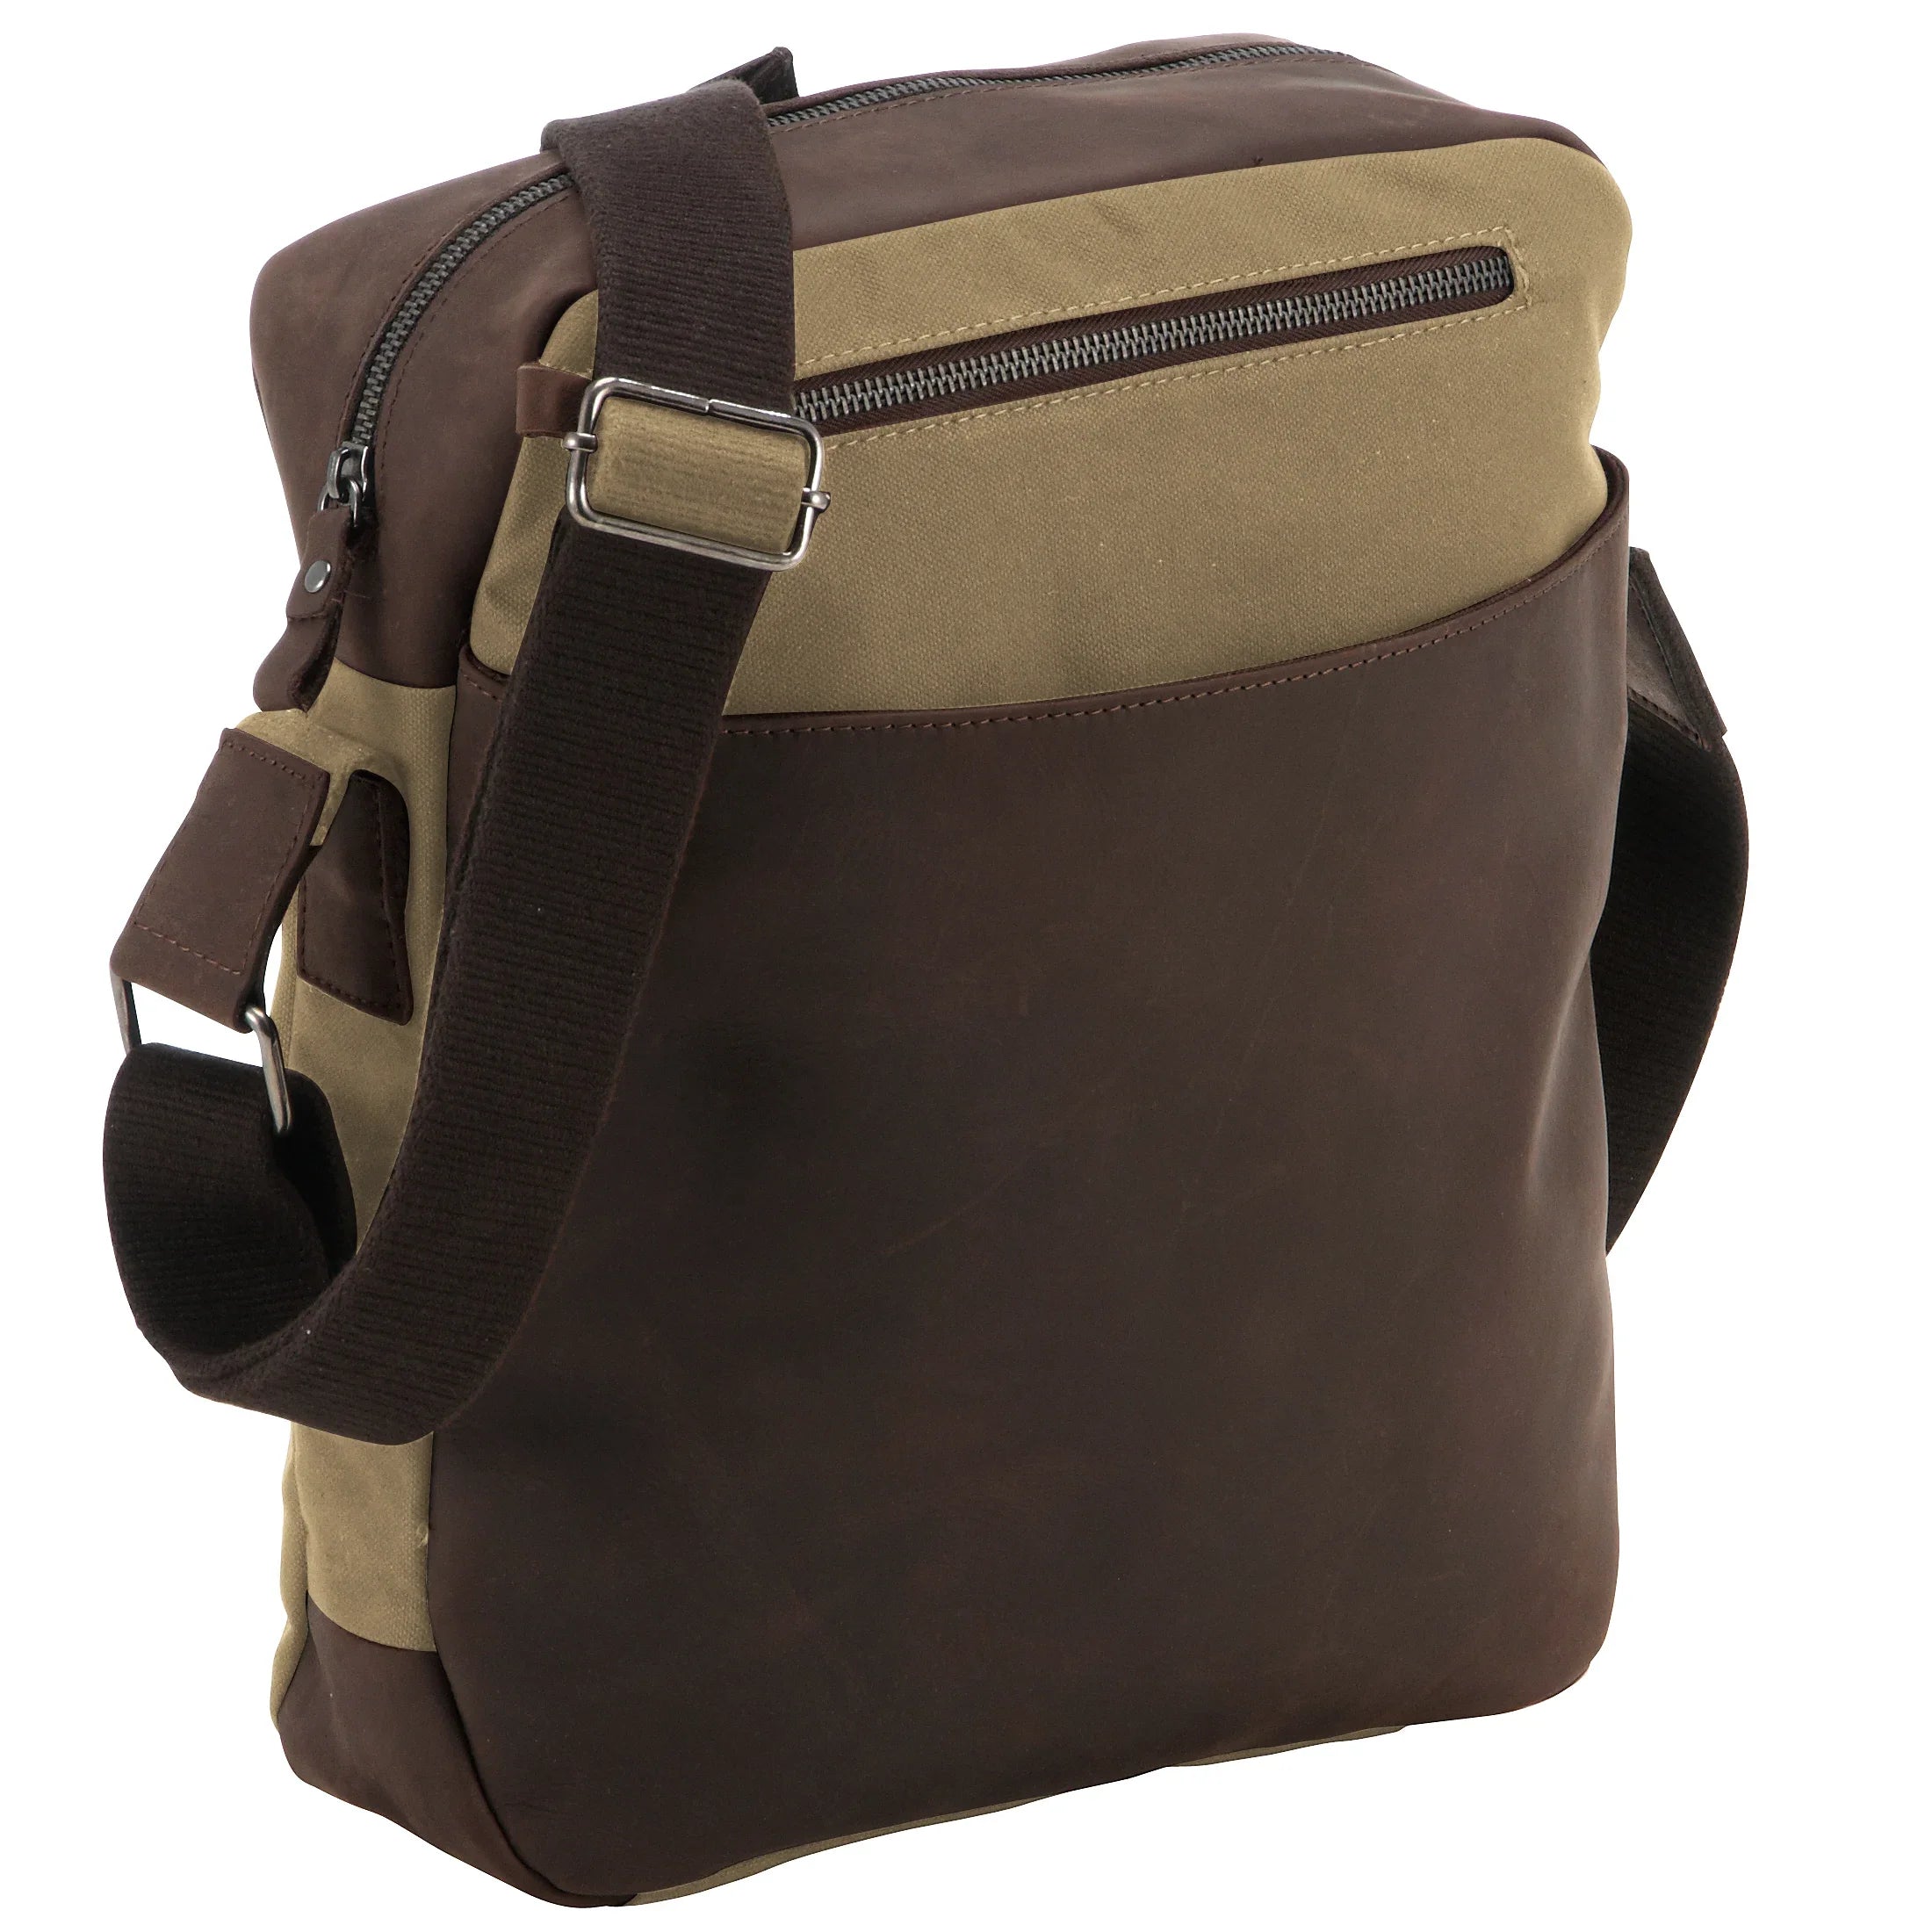 Harolds Waxcan RV-Bag sac à bandoulière 34 cm - sable/marron